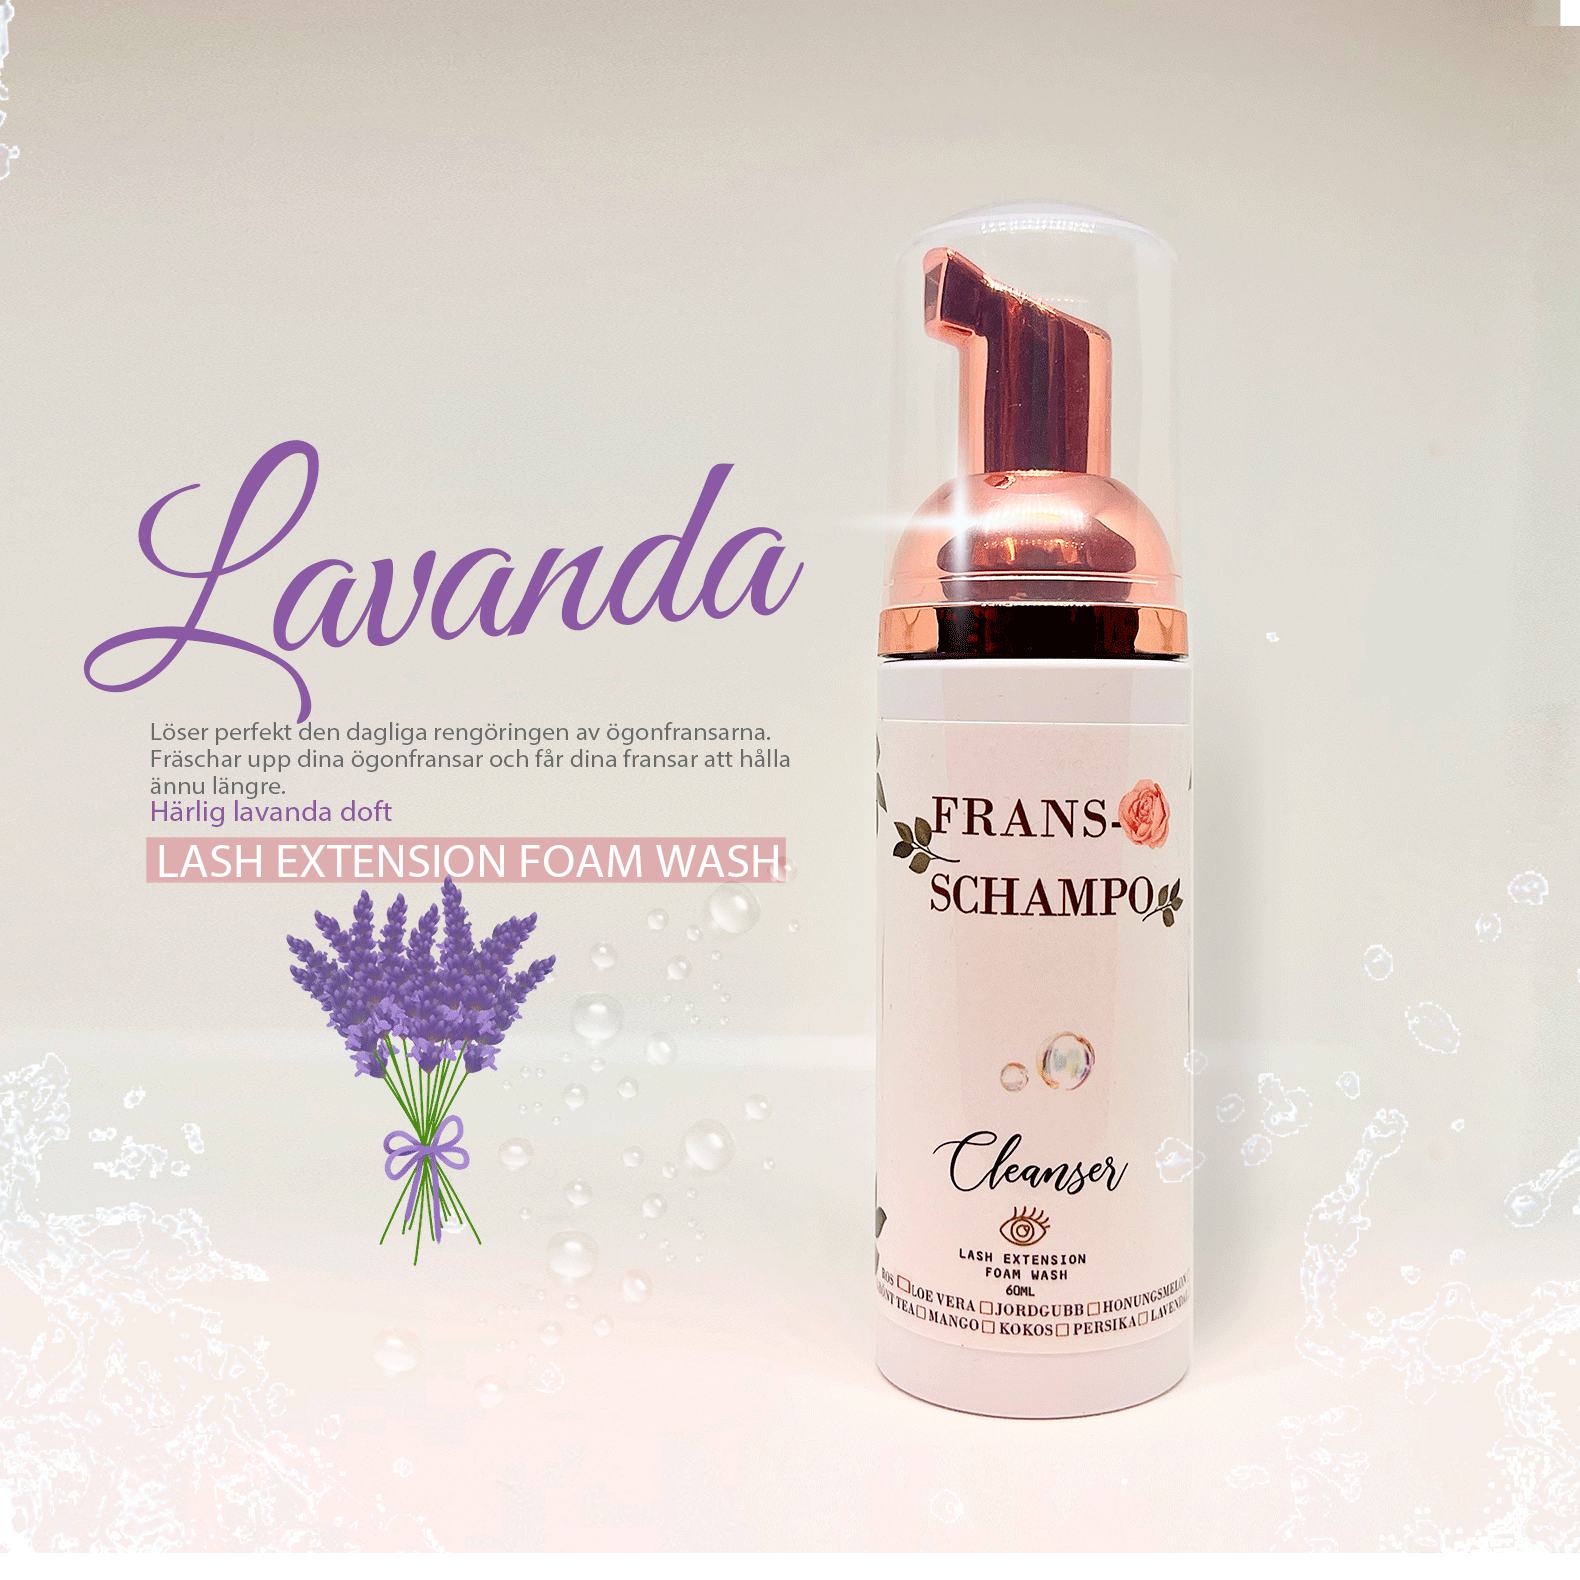 Fransrengöring Lash shampoo Fransschampo med Lavendel Guld